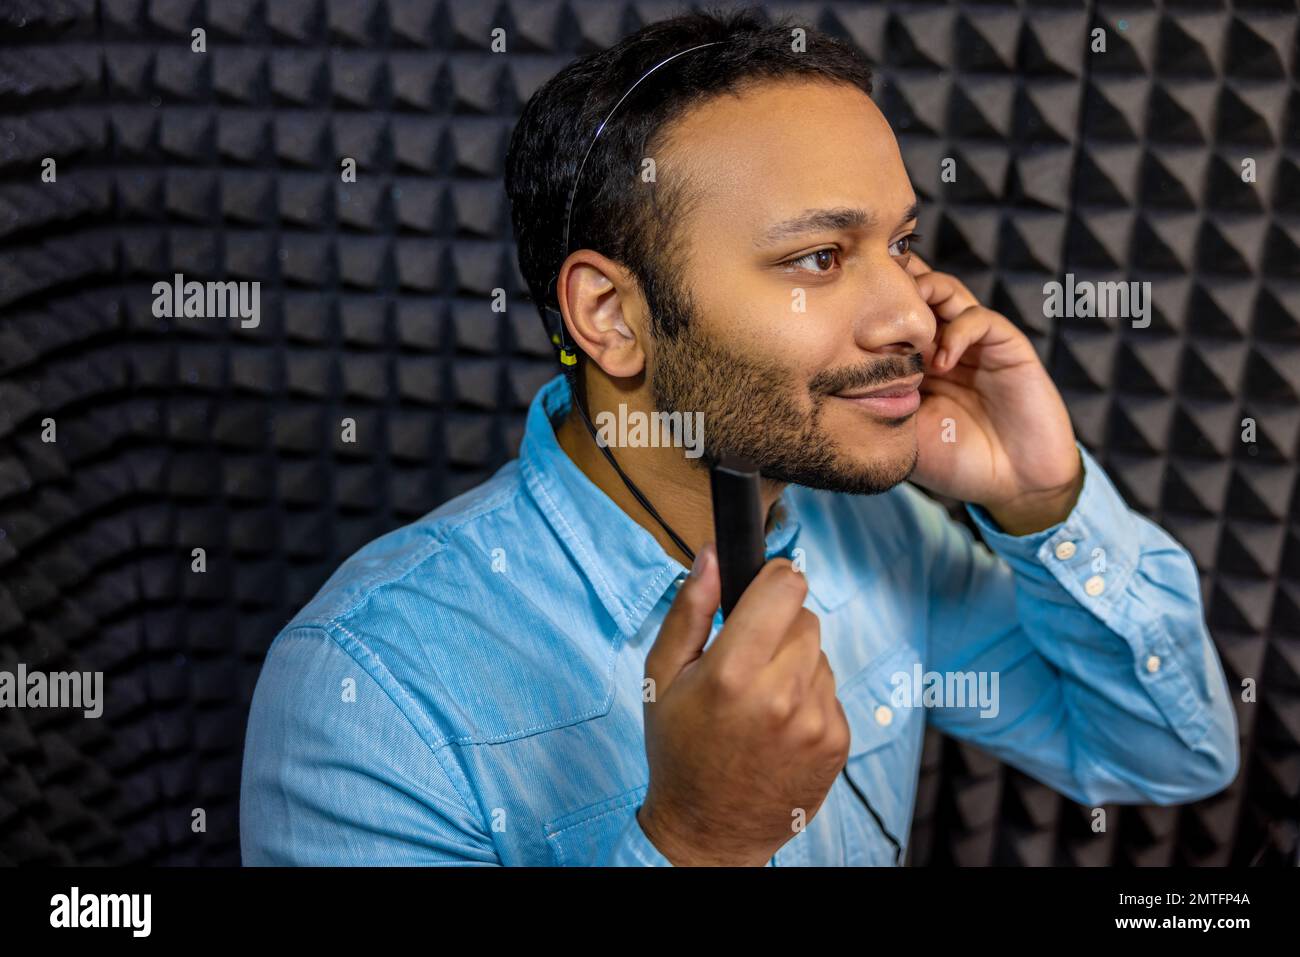 Smiling young man having a hearing checkup Stock Photo